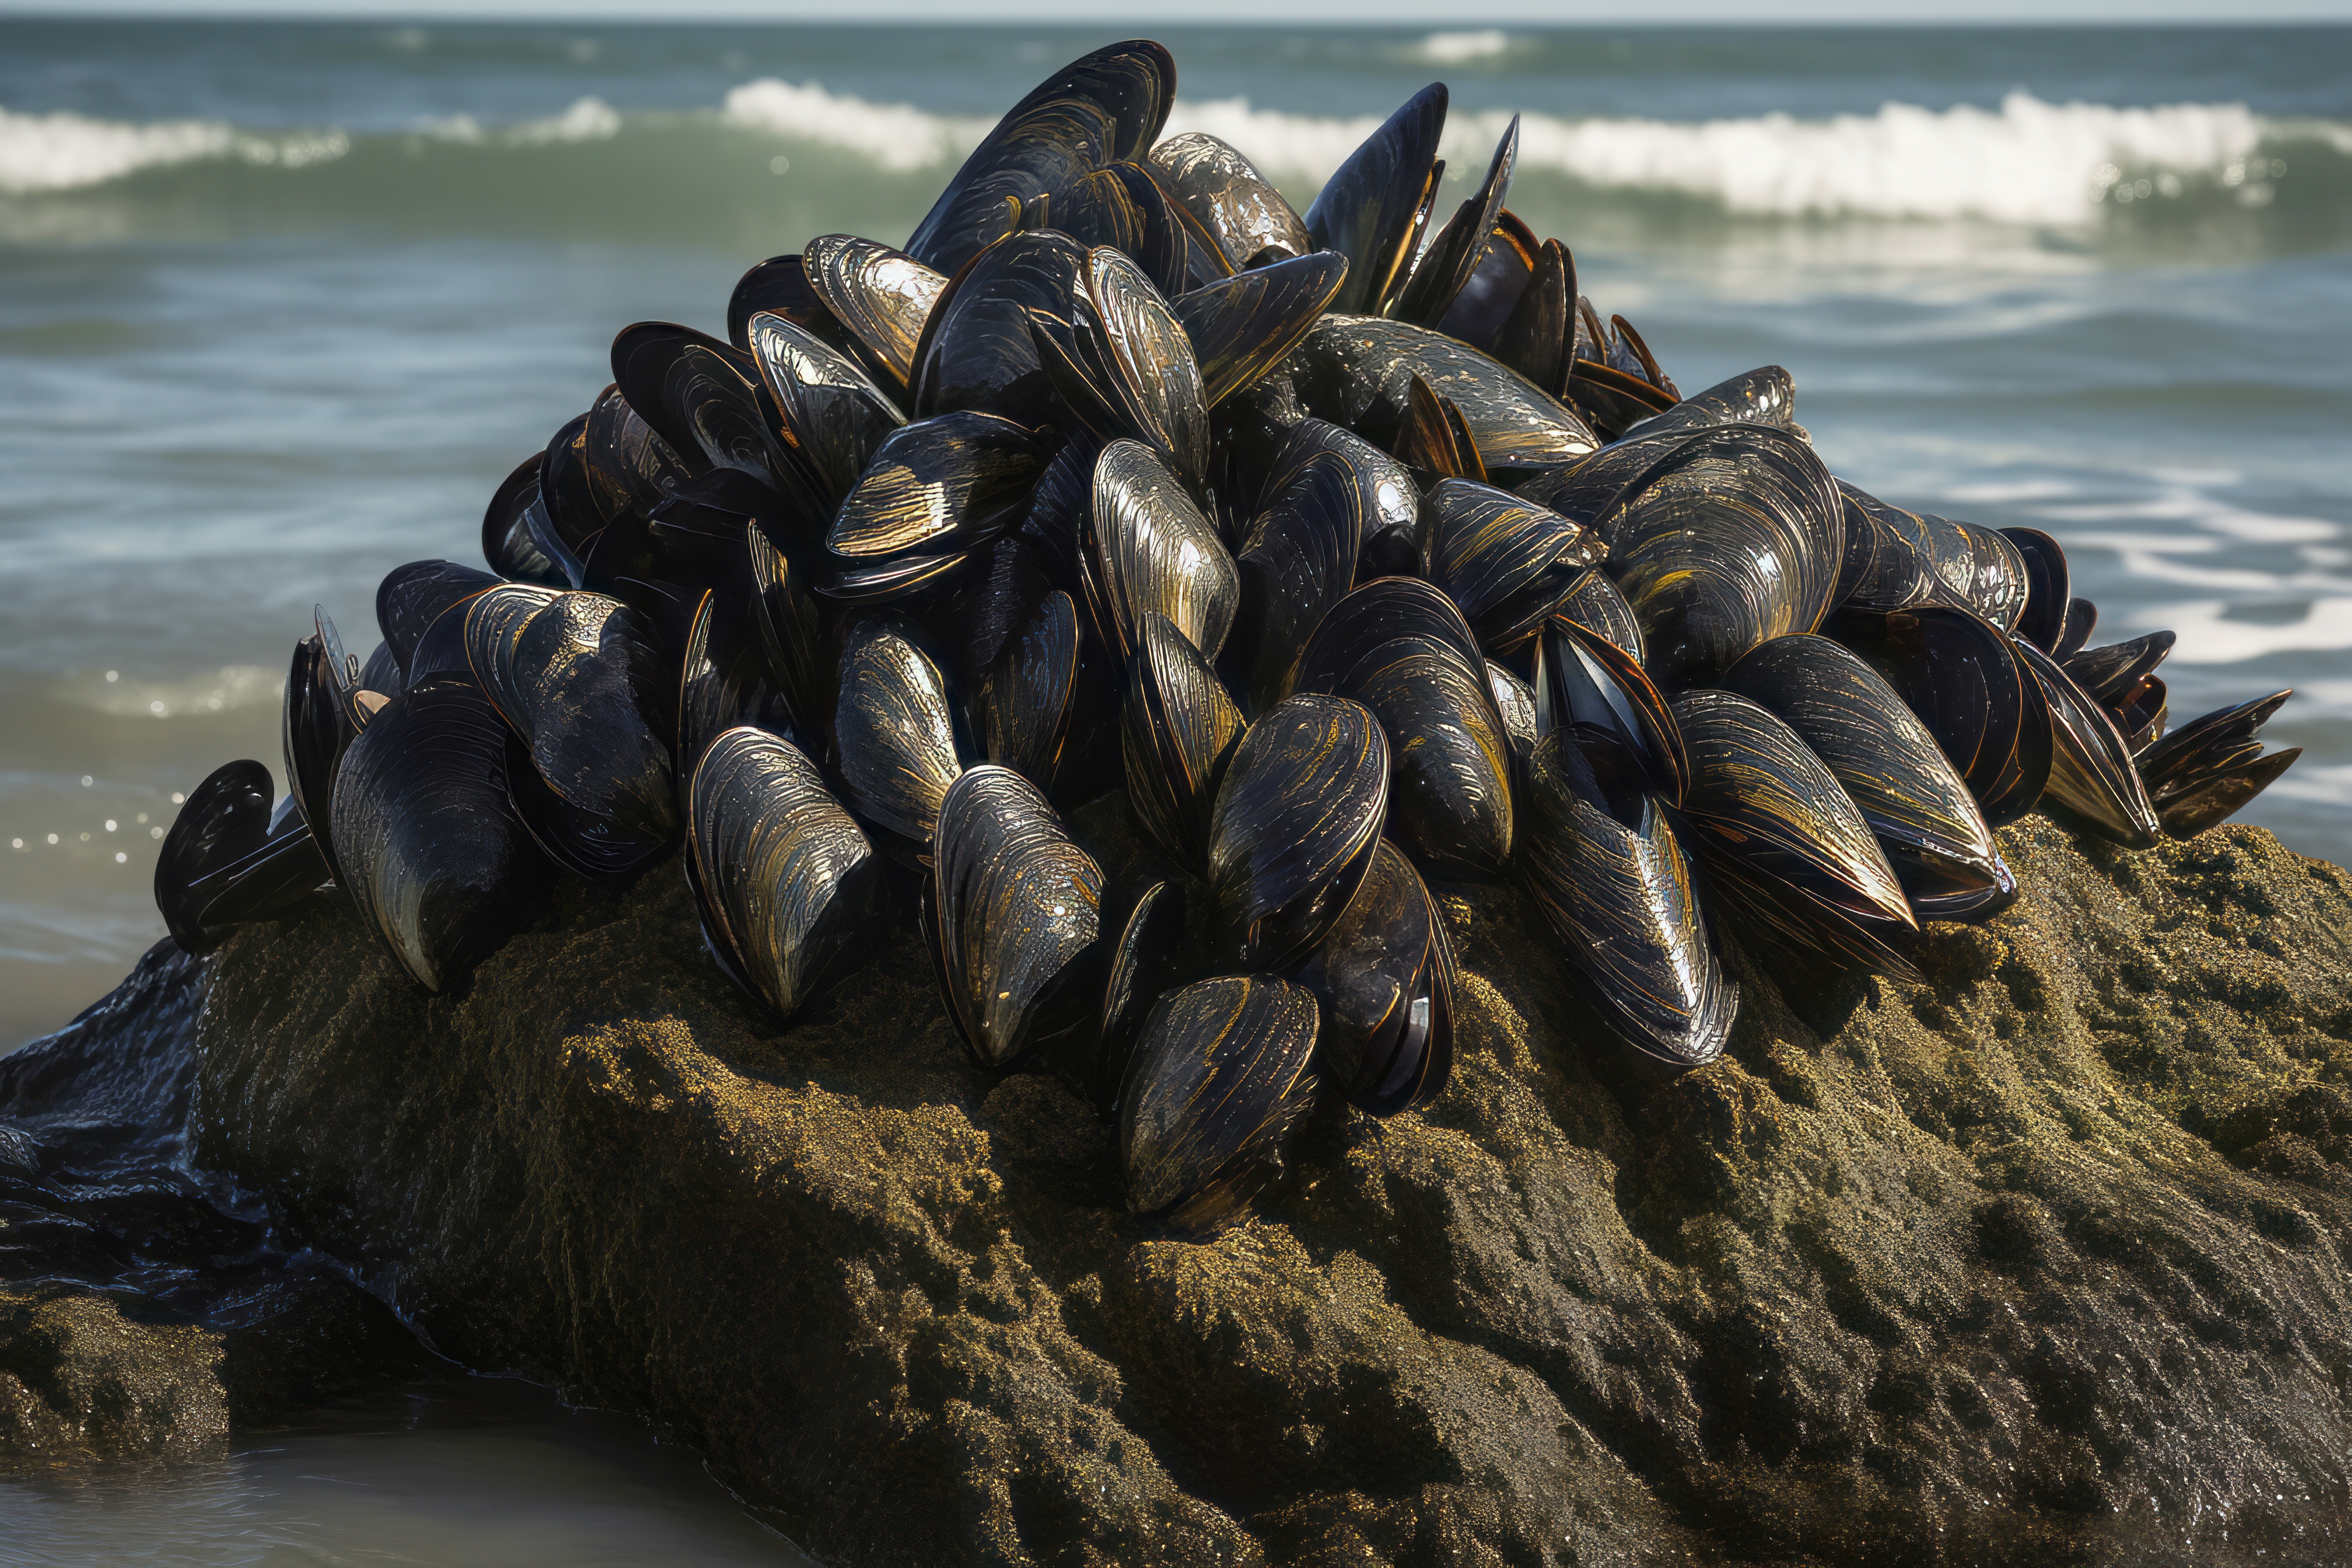 Pile of mussels on sea sand. Seafood mussel on marine coastline habitat.